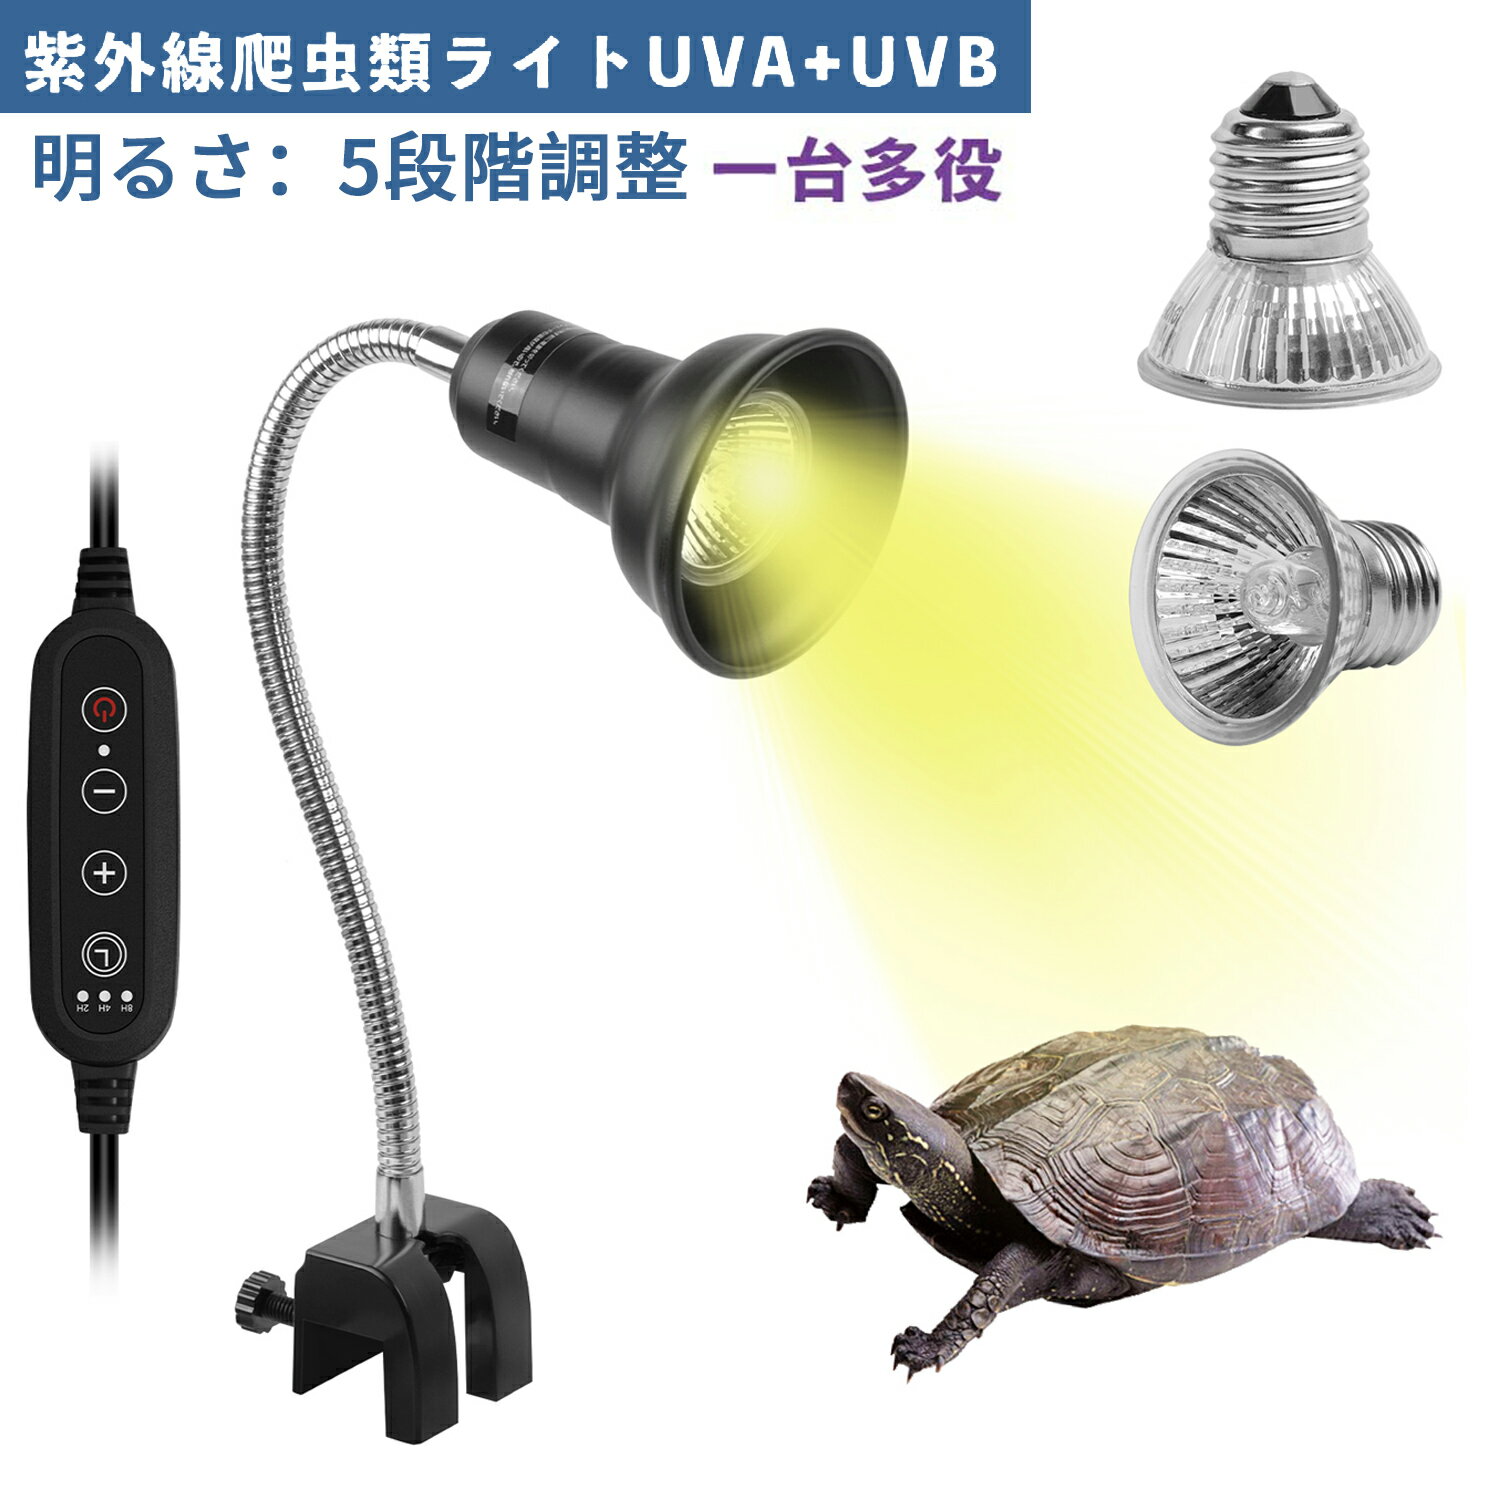 爬虫類 ライト 紫外線ライト 亀 uvb uva 亀用 レプタイル 保温ライト 両生類用 亀日光浴ライト ヒーター 50w